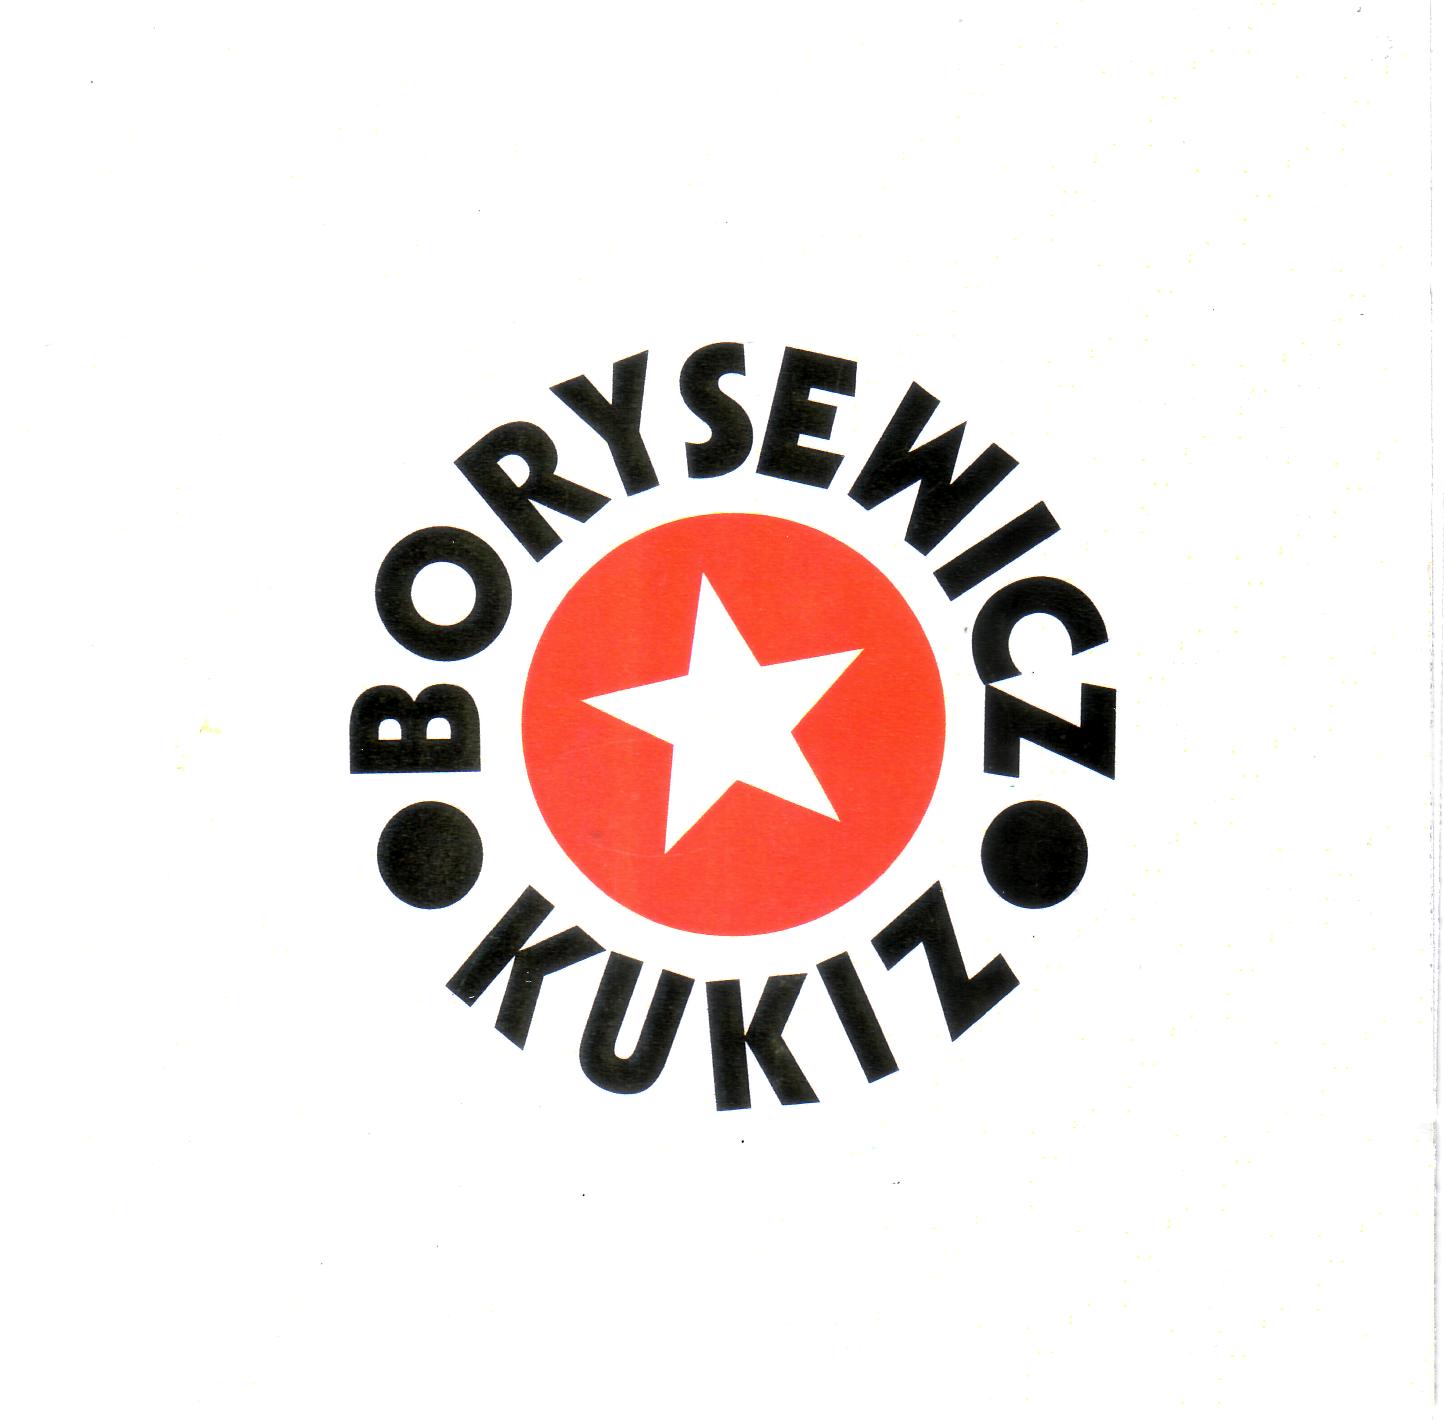 Borysewicz i Kukiz - Borysewicz i Kukiz - Borysewicz i Kukiz - Borysewicz i Kukiz - Przód.jpg